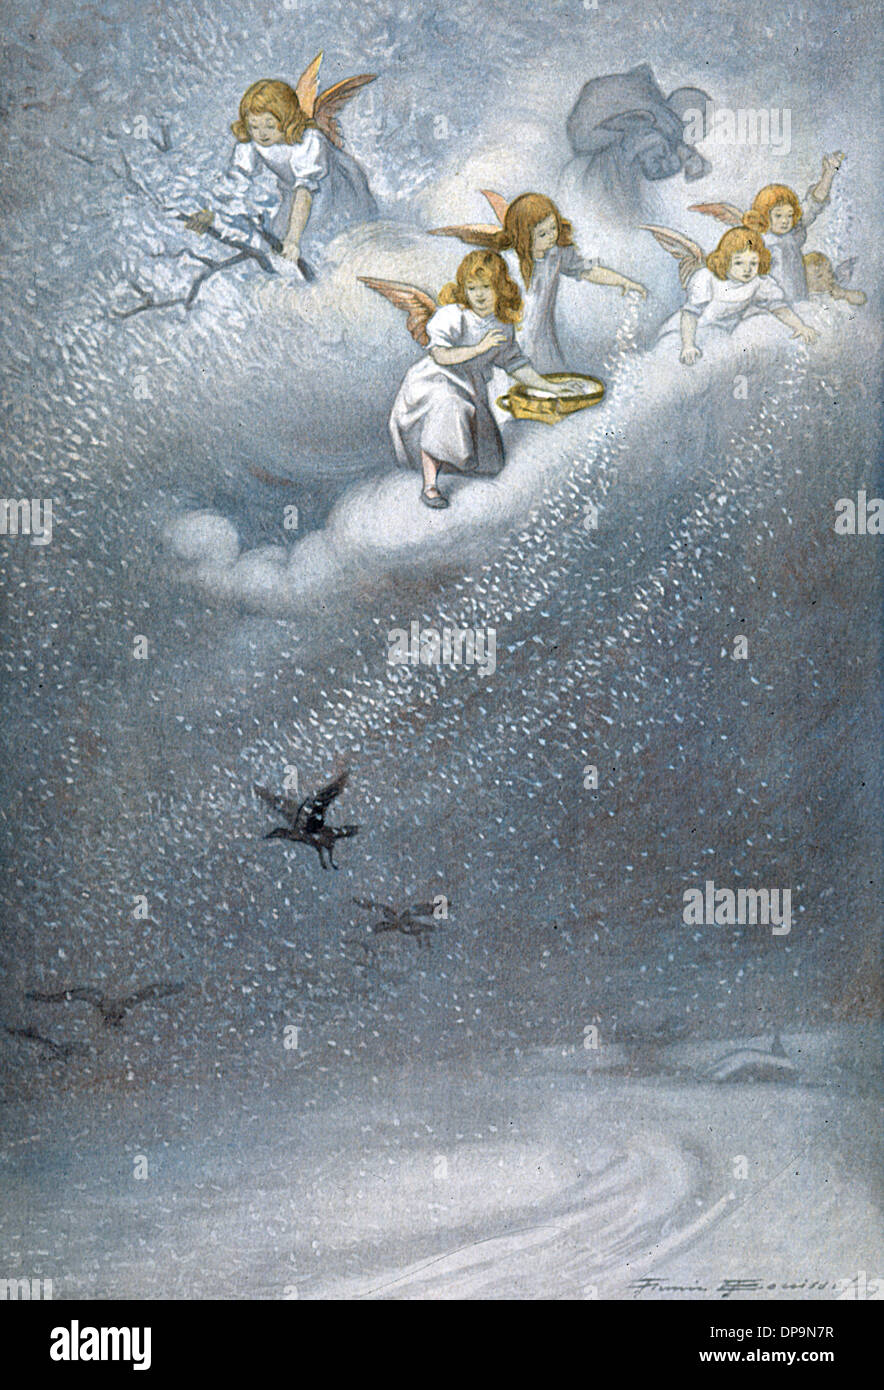 Les anges font de la neige Banque D'Images